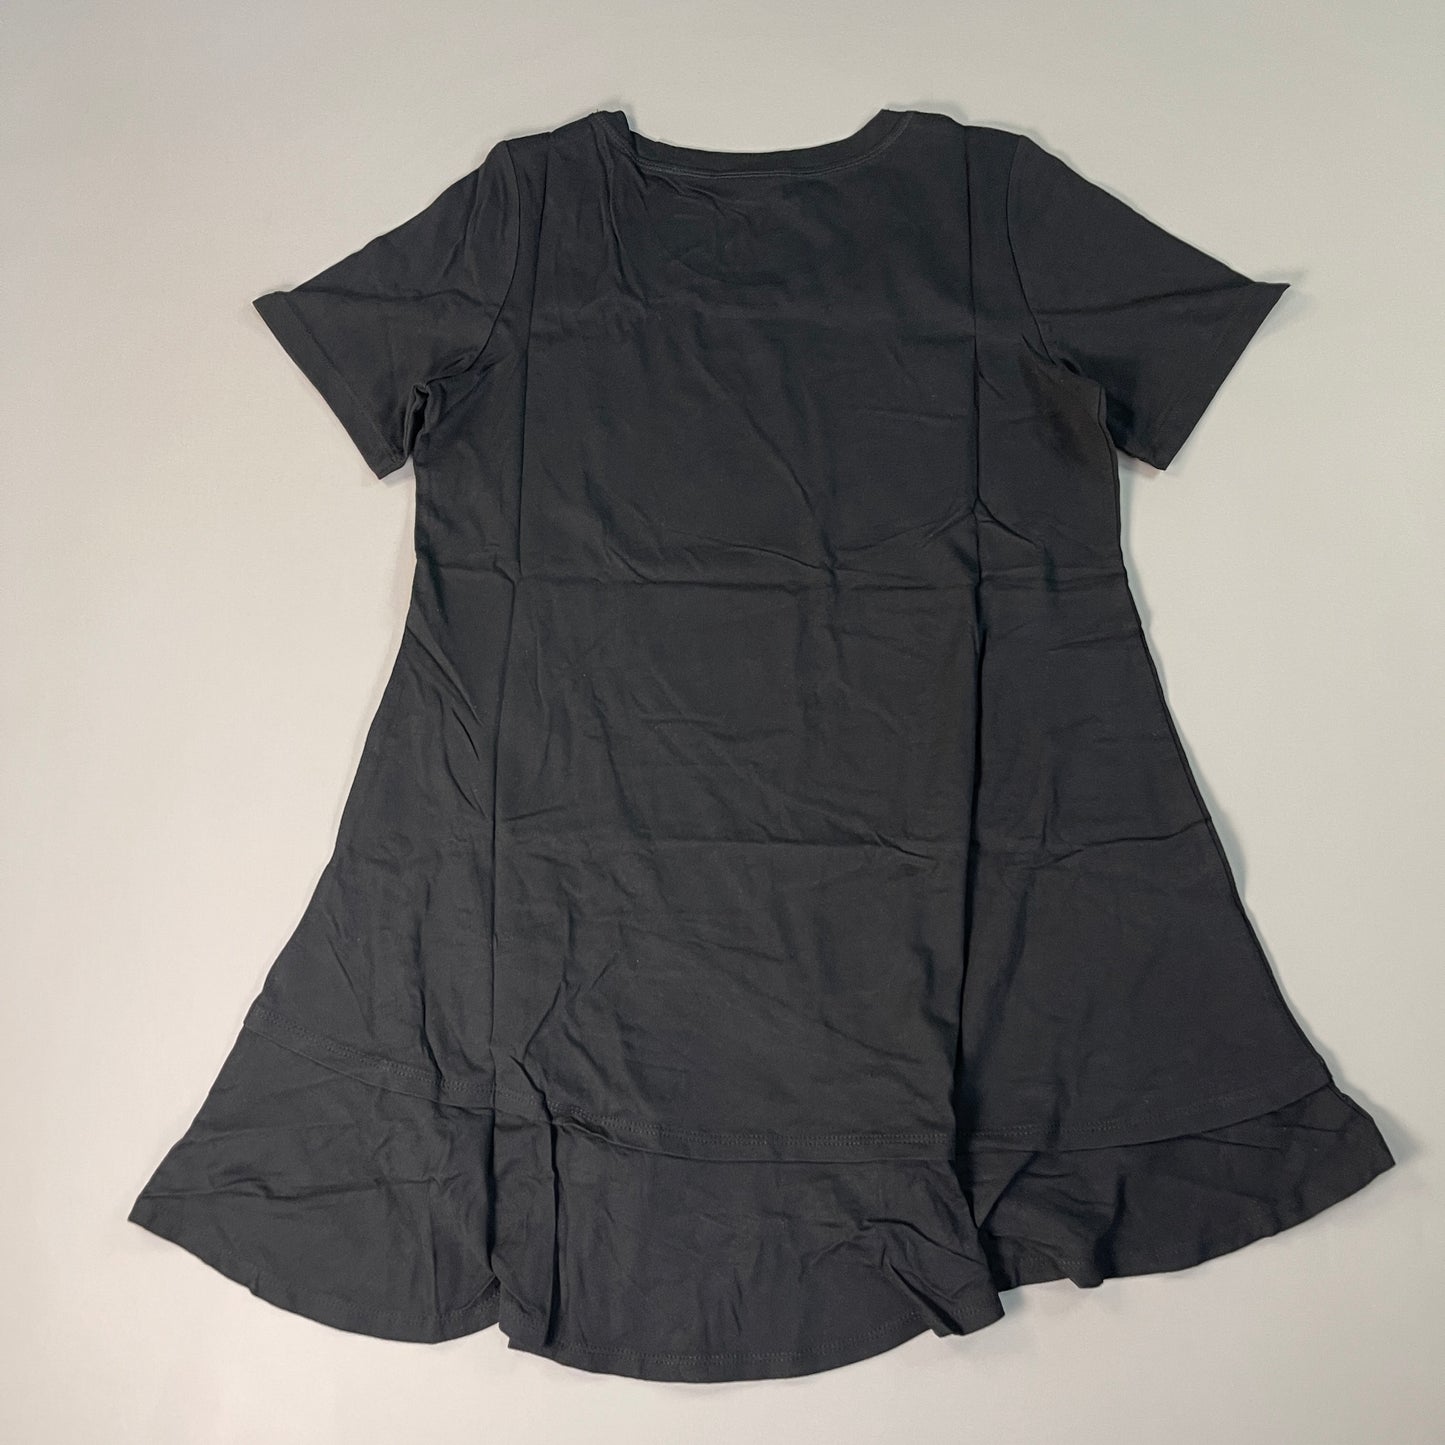 LOGO LORI GOLDSTEIN Knit Short Sleeve Shirt Asymmetric Hem Women's Sz XS Black (New)